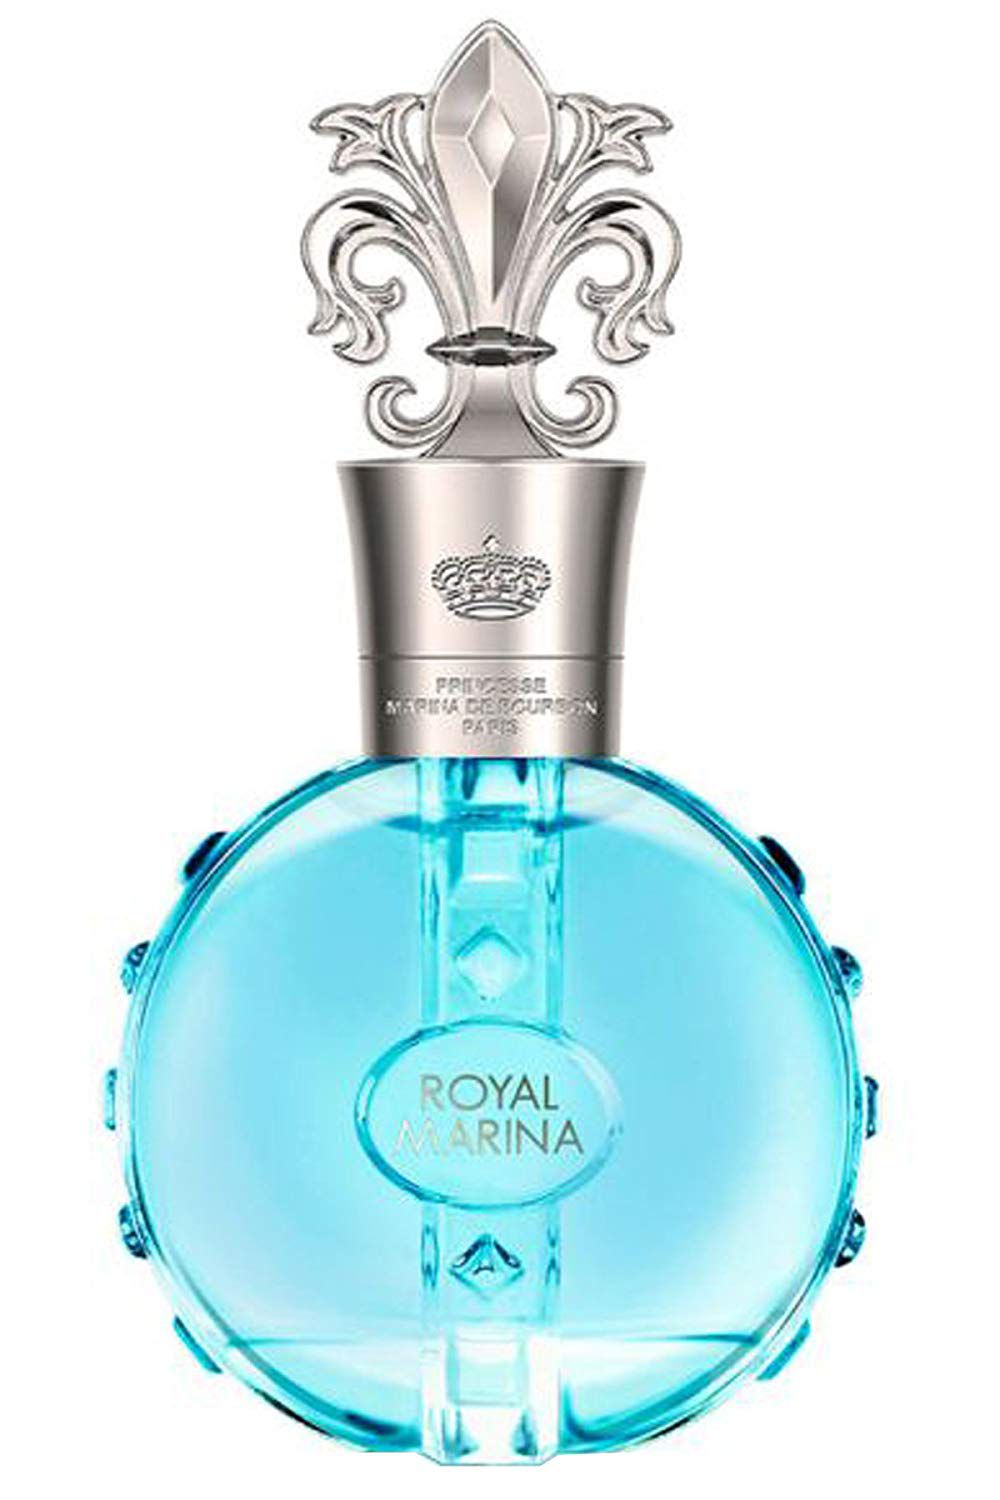 Royal Turquoise Eau de Parfum Marina de Bourbon - Perfume Feminino -  Perfume Importado Original | Loja Online em Promoção